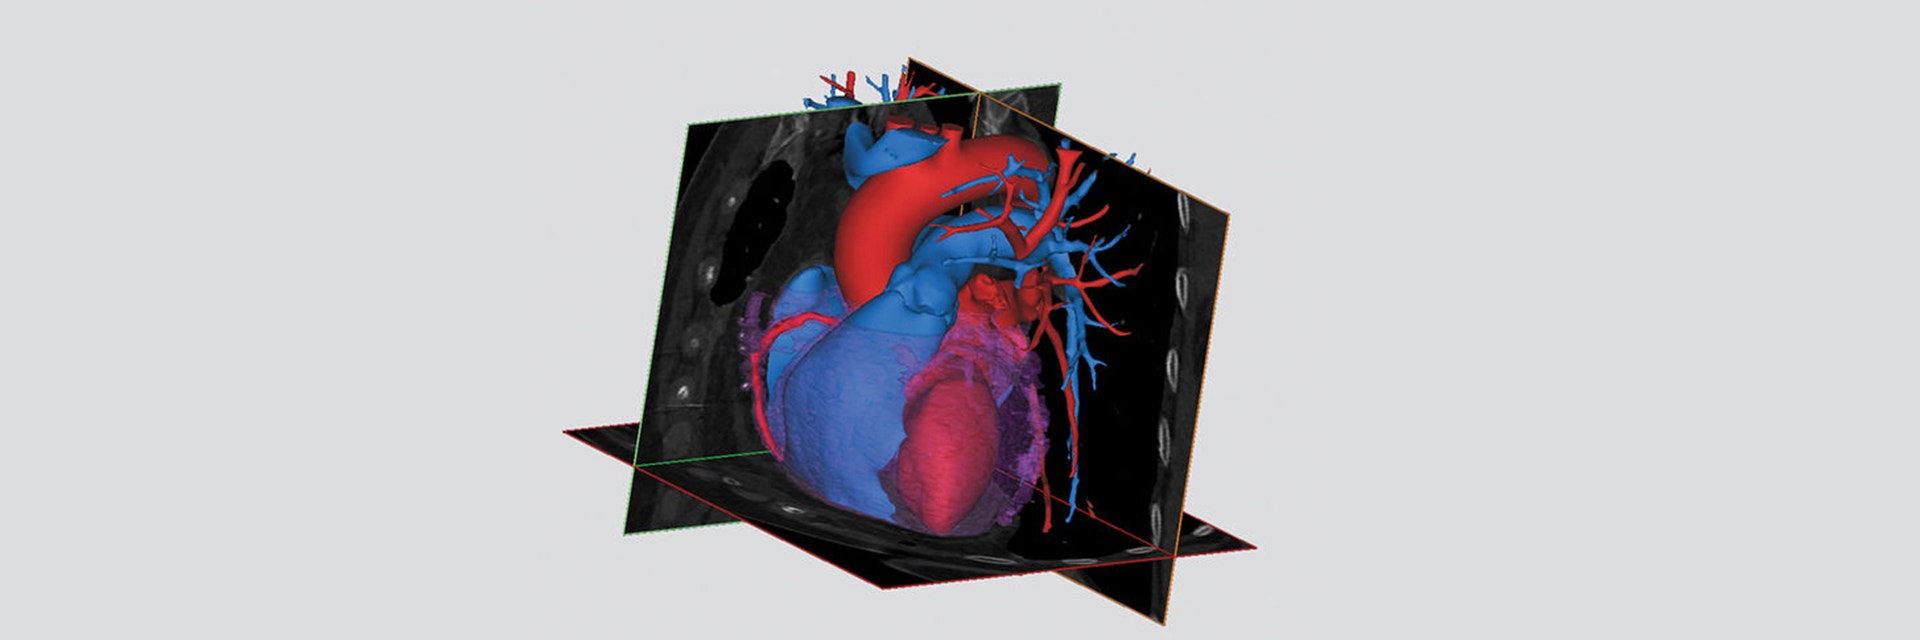 3D digital model of a heart in software